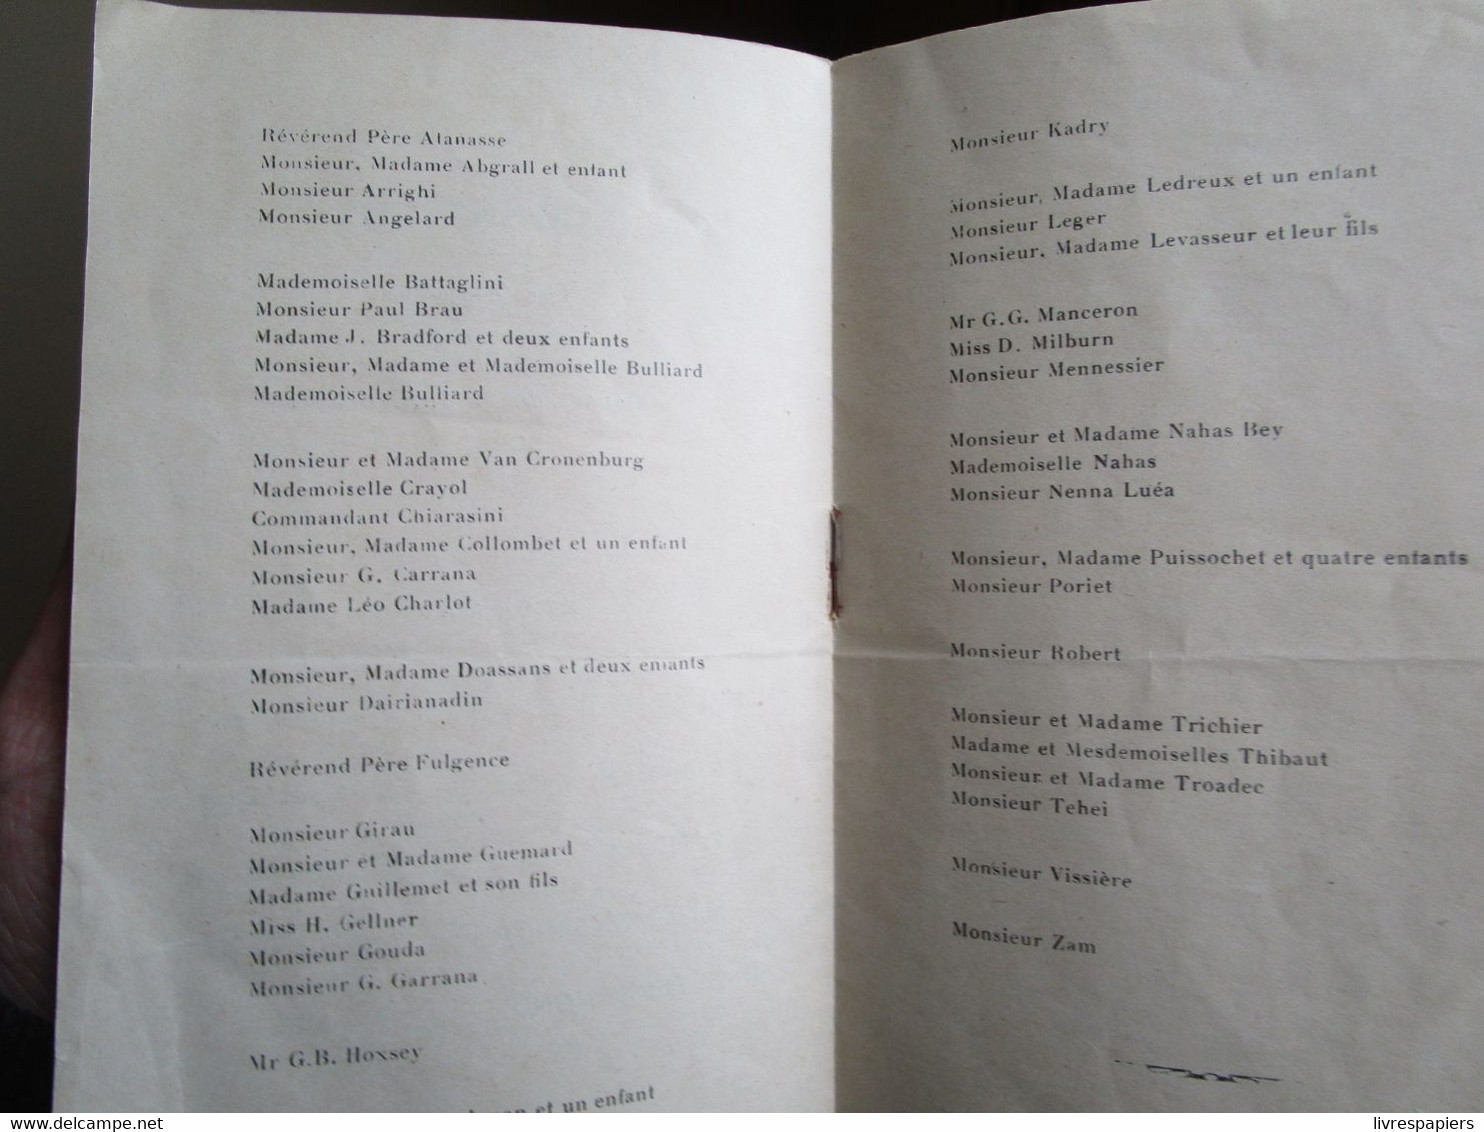 Messageries Maritimes  Liste Des Passagers Paquebot Chantilly 22 Juillet 1931 Ligne Indochine + 2 Programes Concert - Menus